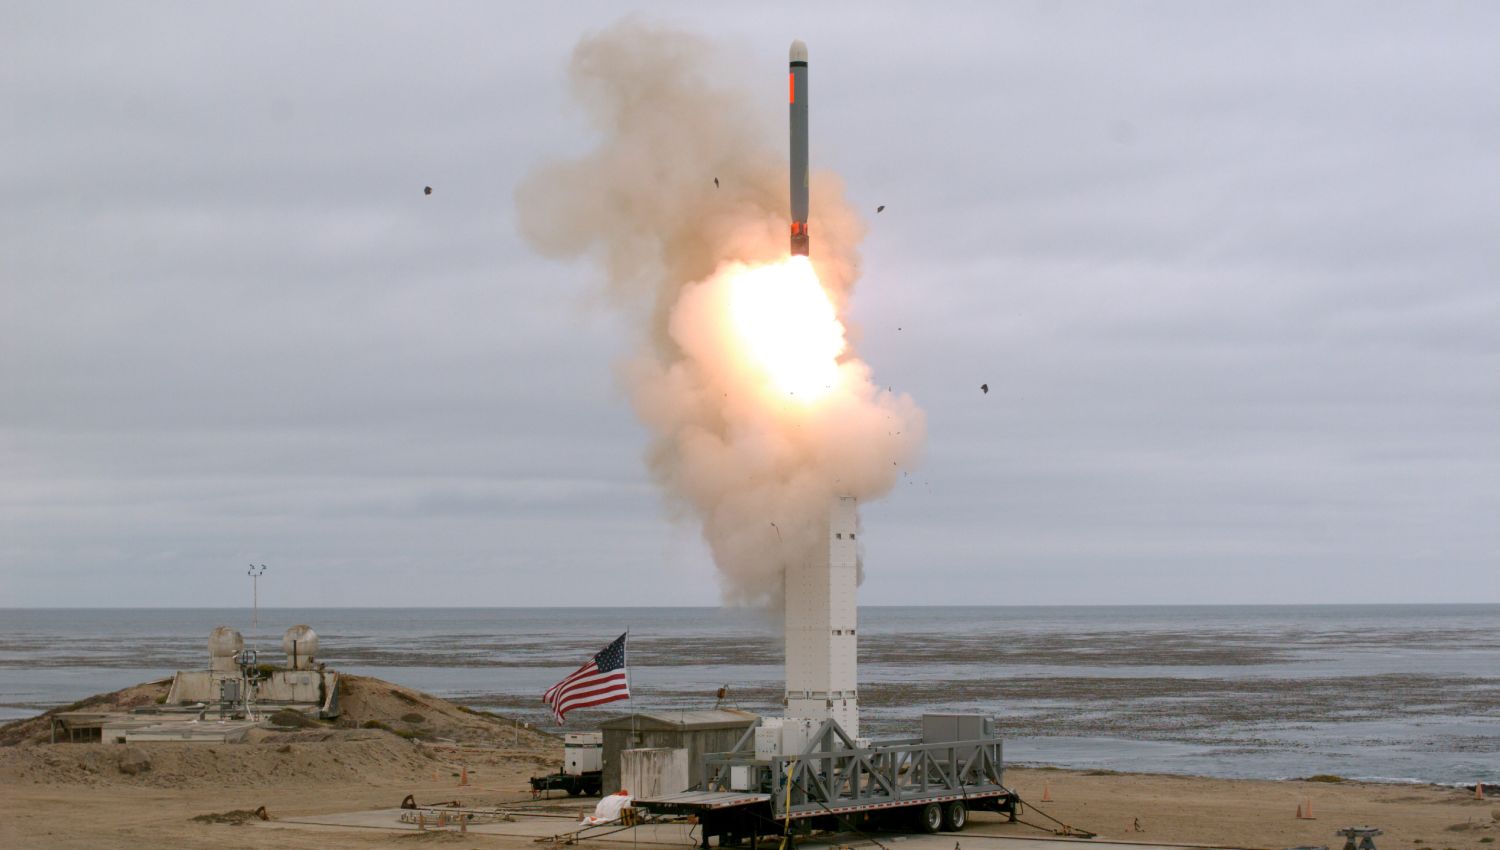 جون بولتون: أمريكا بحاجة الآن للدفاع الصاروخي أكثر من أي وقت مضى!!